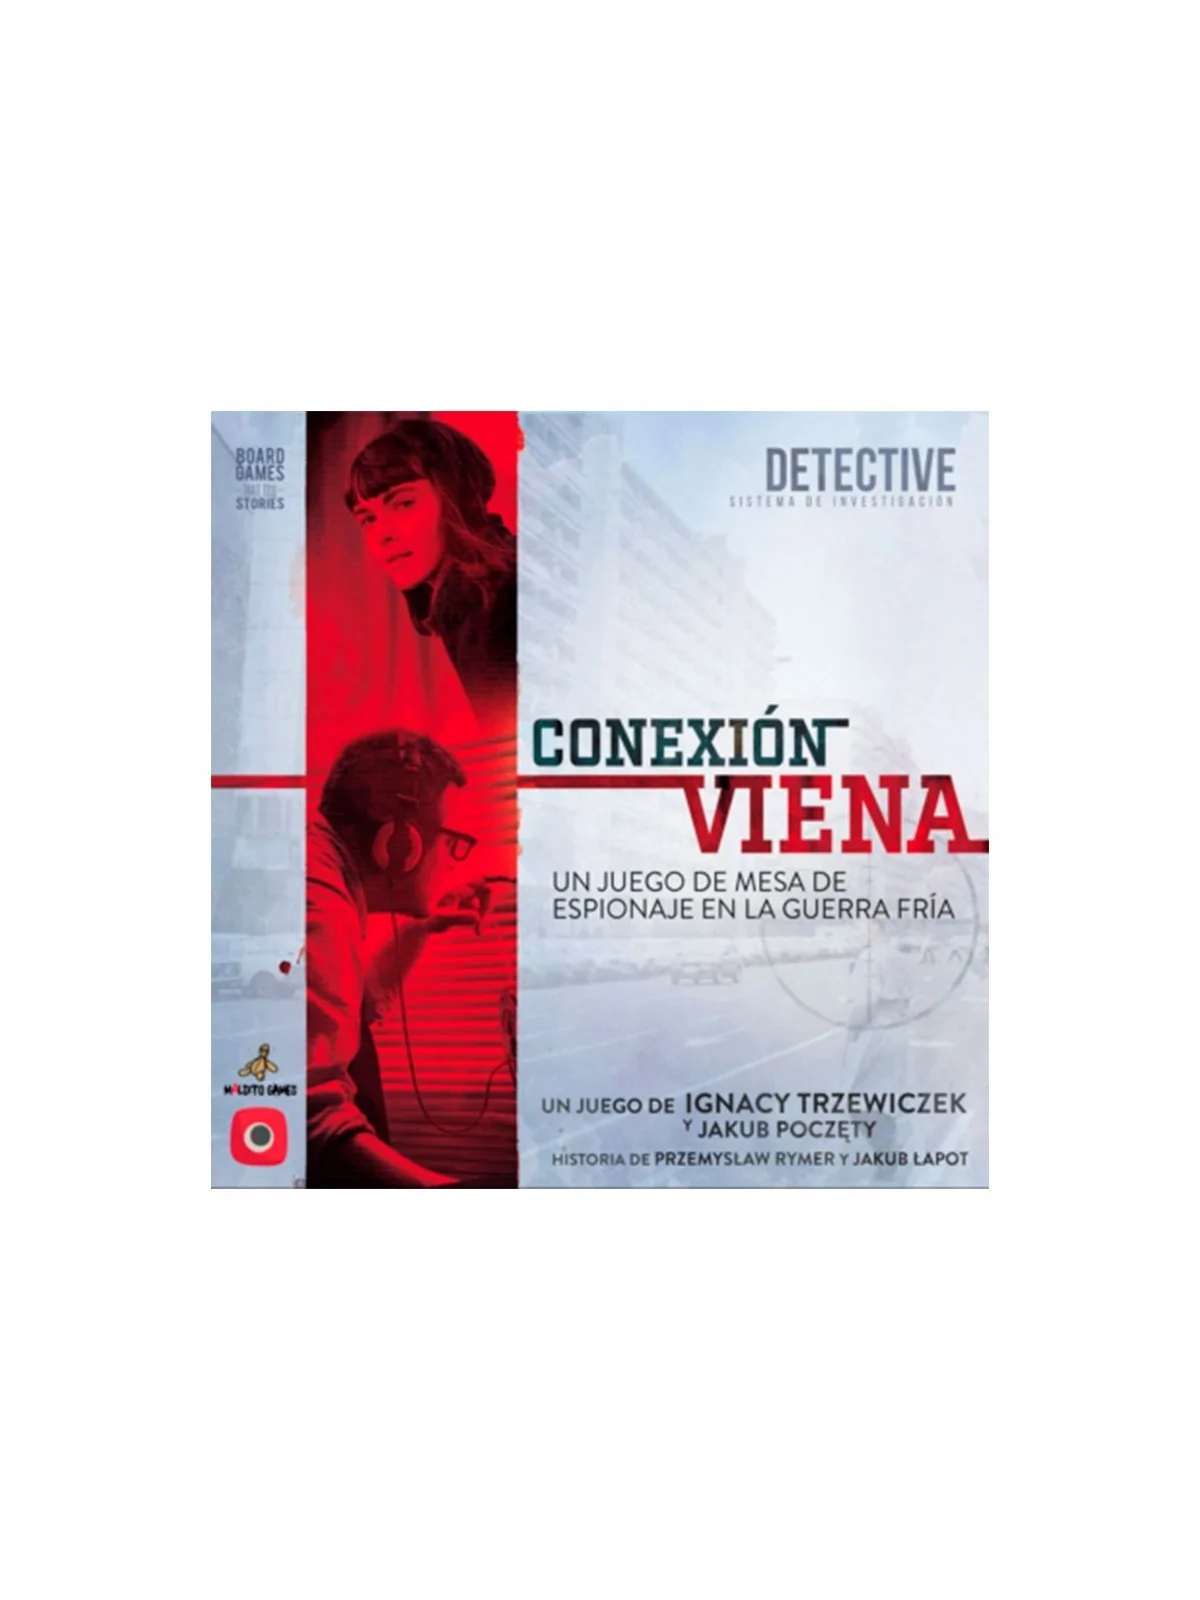 Comprar Detective: Conexión Viena barato al mejor precio 40,50 € de Ma